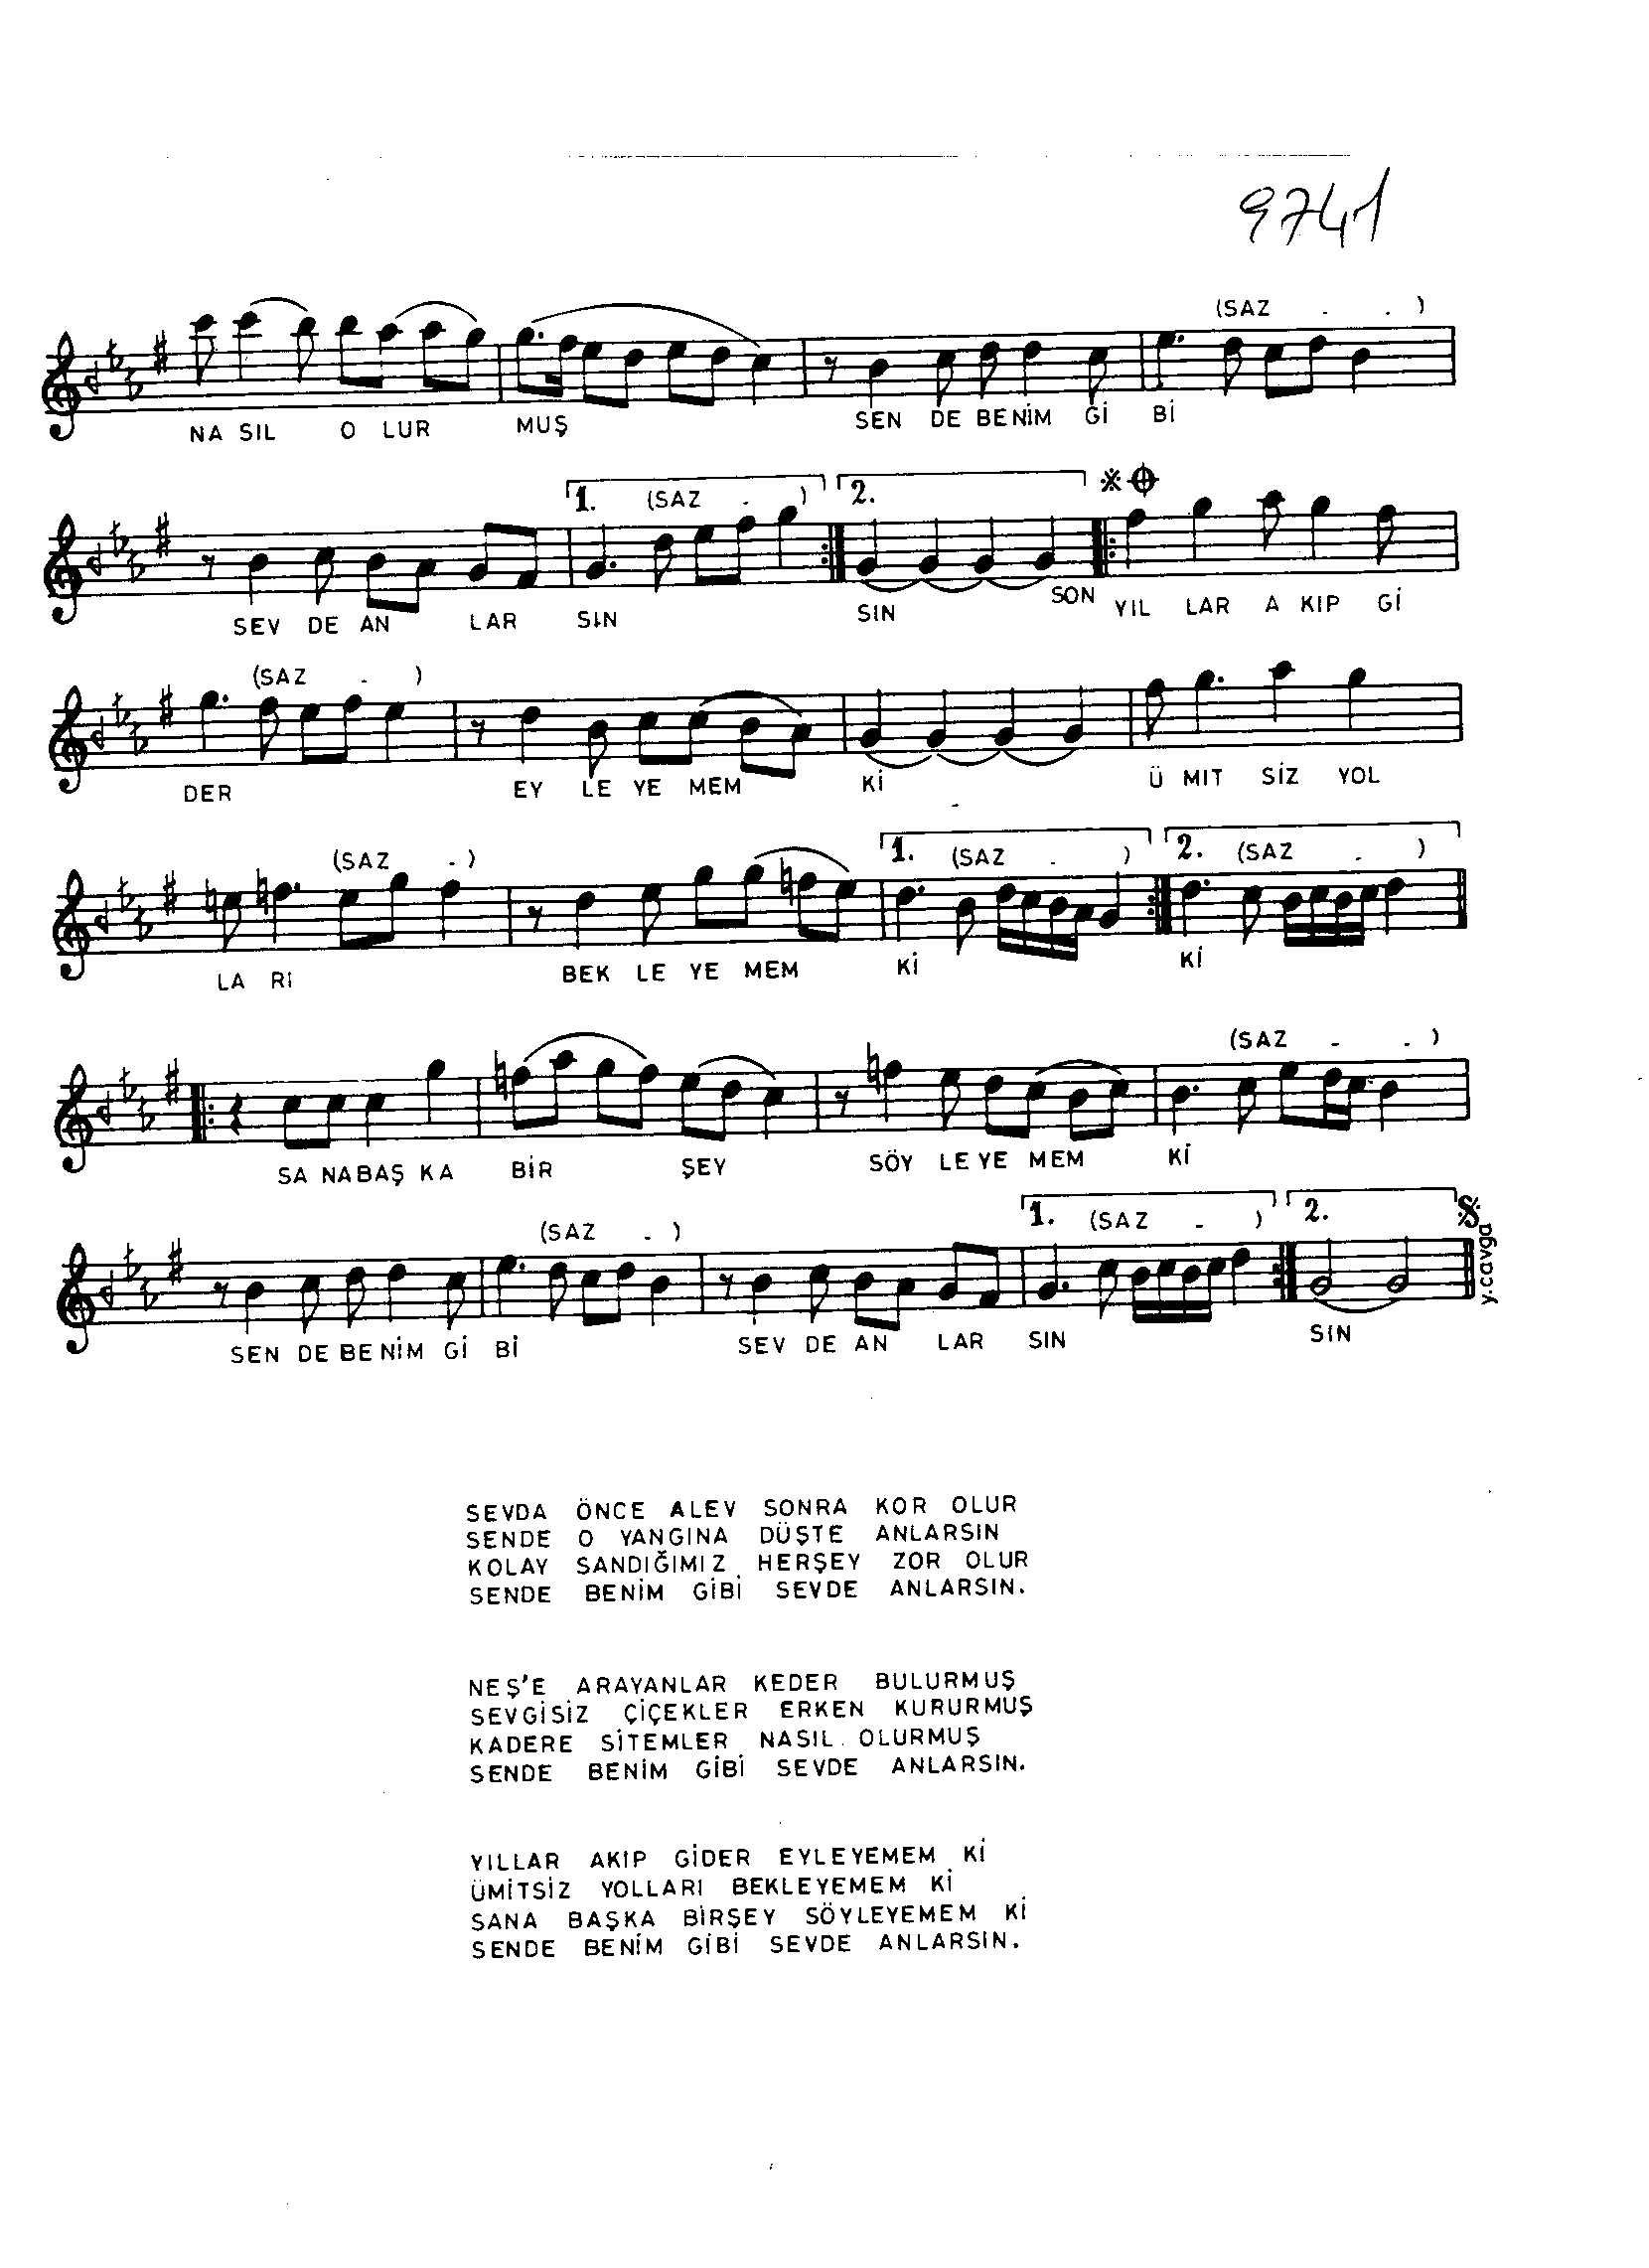 Hicâzkâr - Şarkı - Faruk Şahin - Sayfa 2